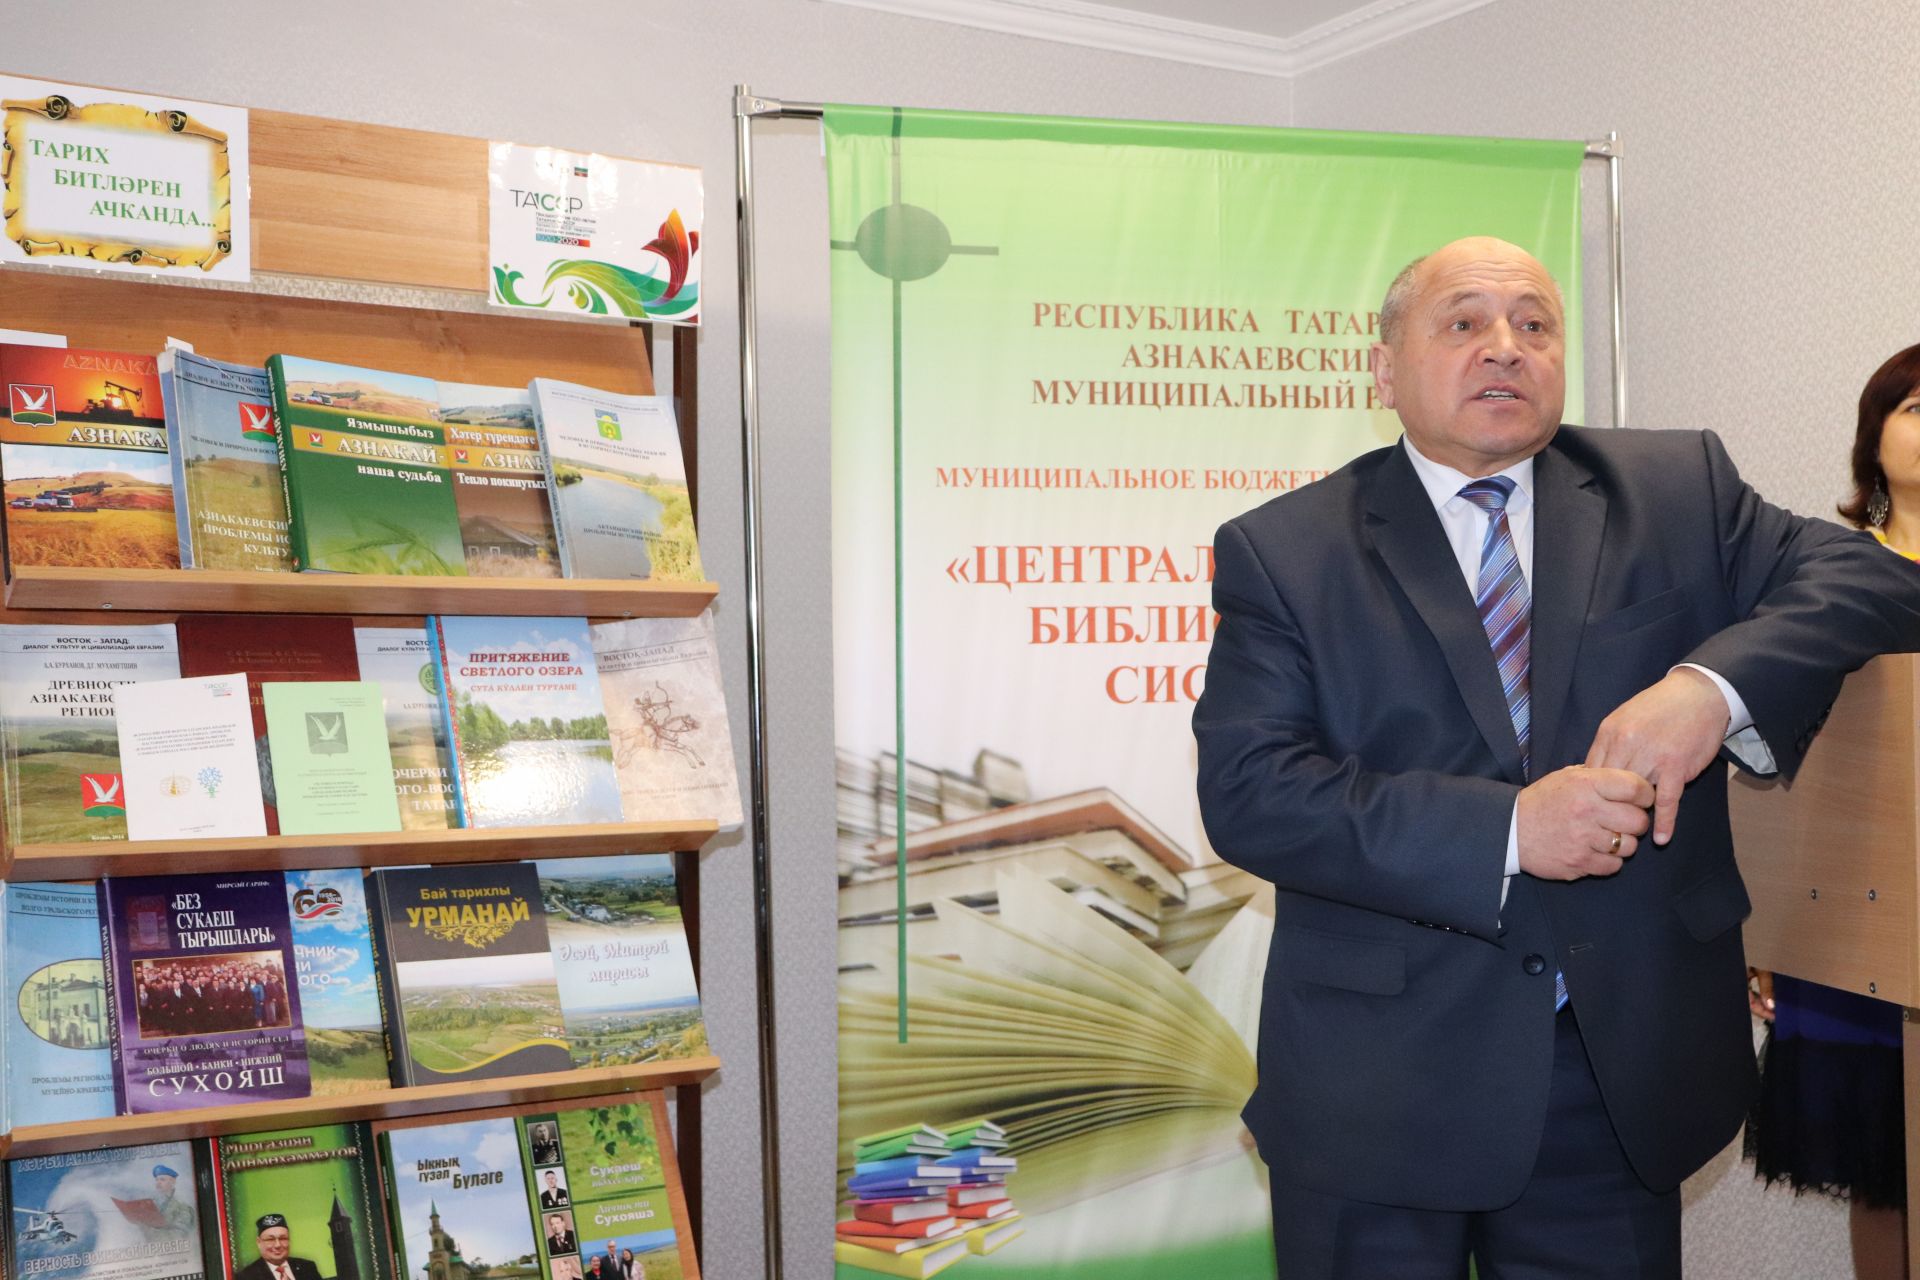 Азнакаевские историки встретились с академиком Альбертом Бурхановым